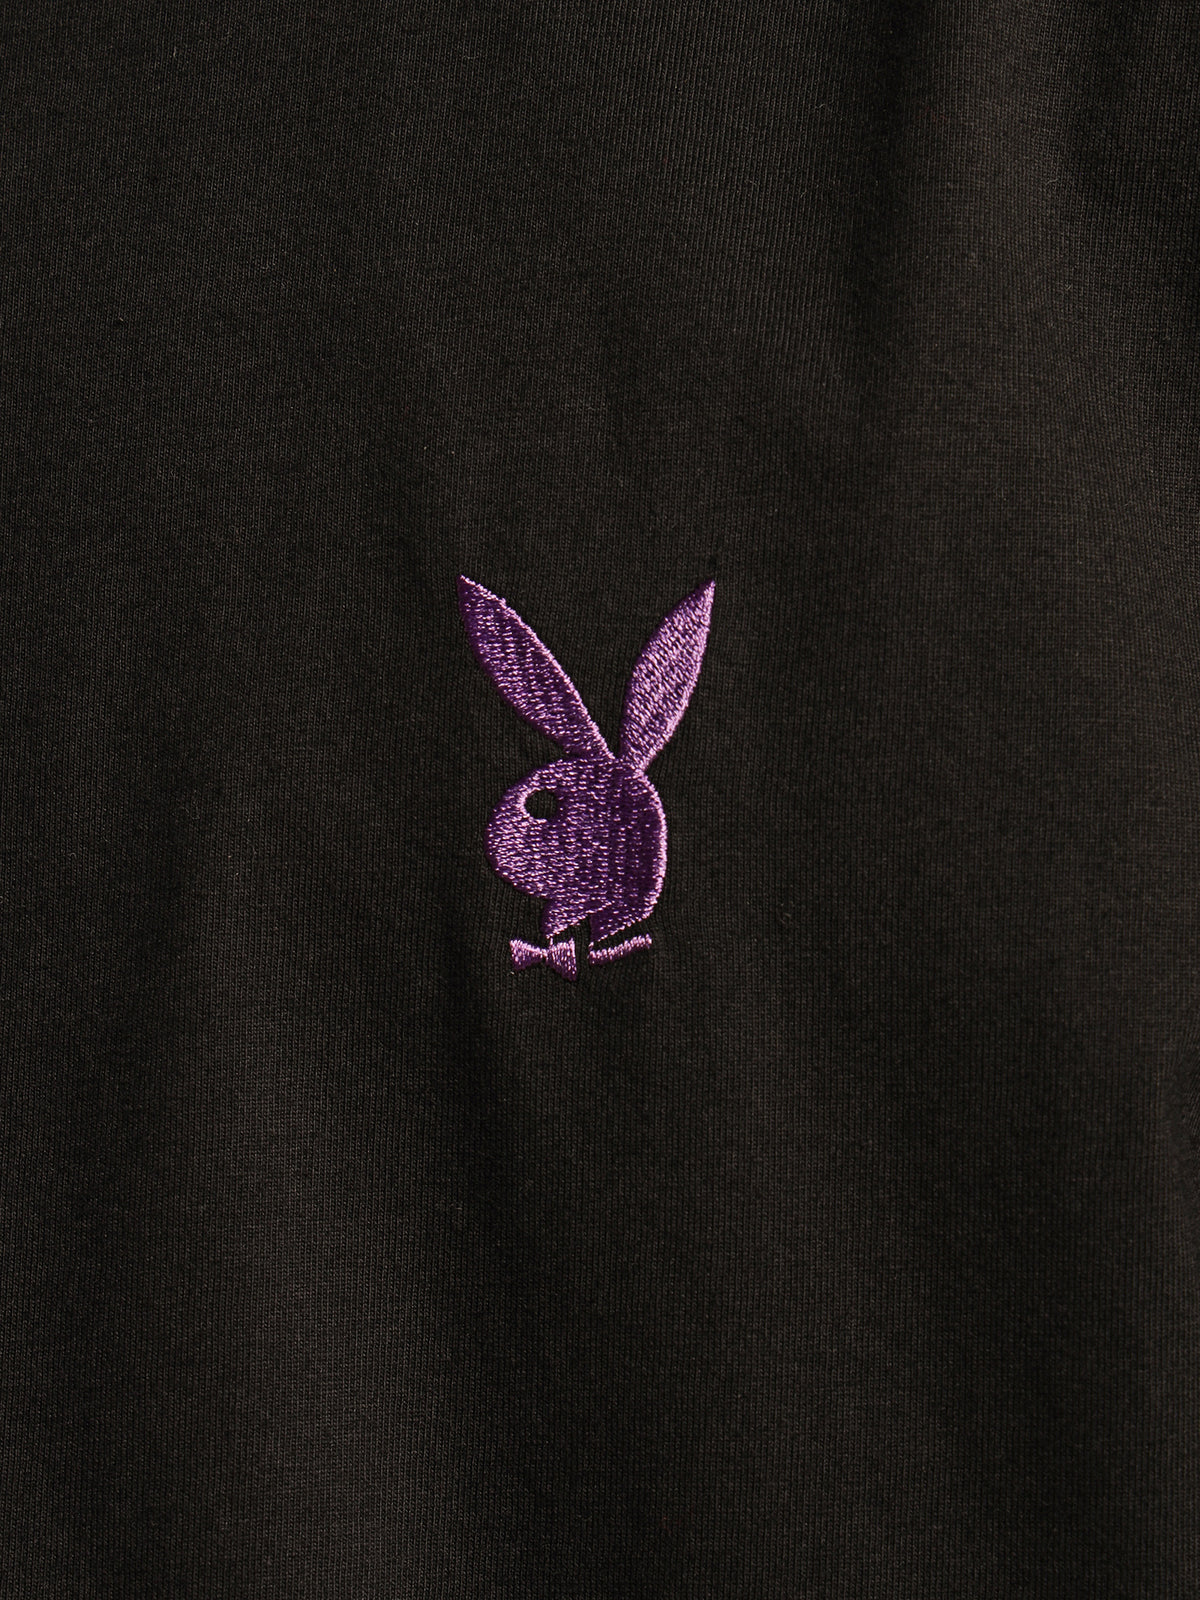 Bunny Basics T-Shirt in Black